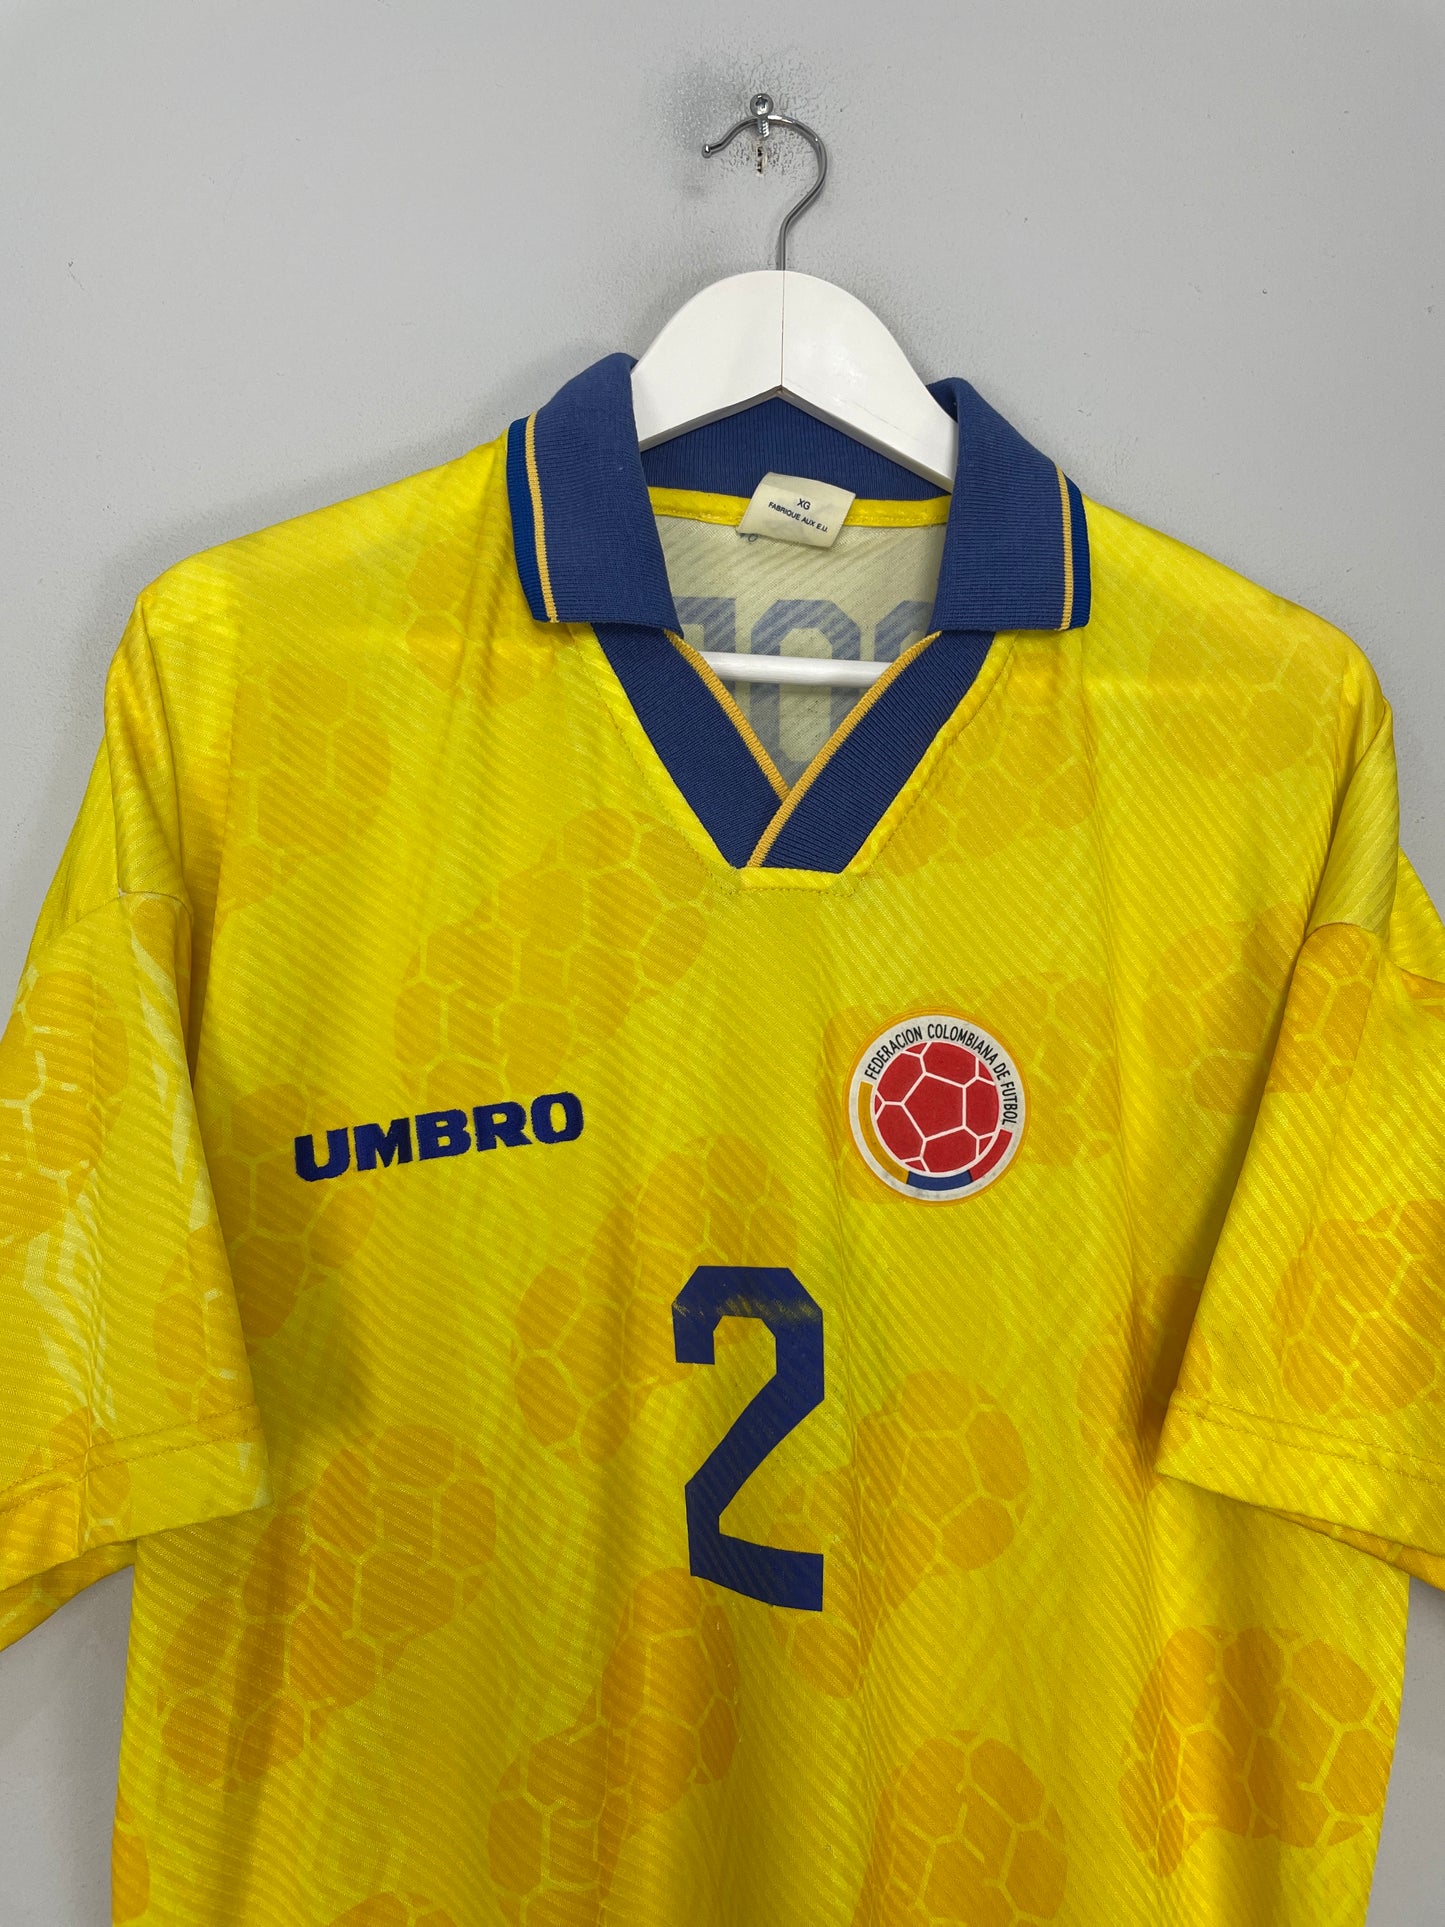 1994/95 COLOMBIA ESCOBAR #2 HOME SHIRT (XL) UMBRO